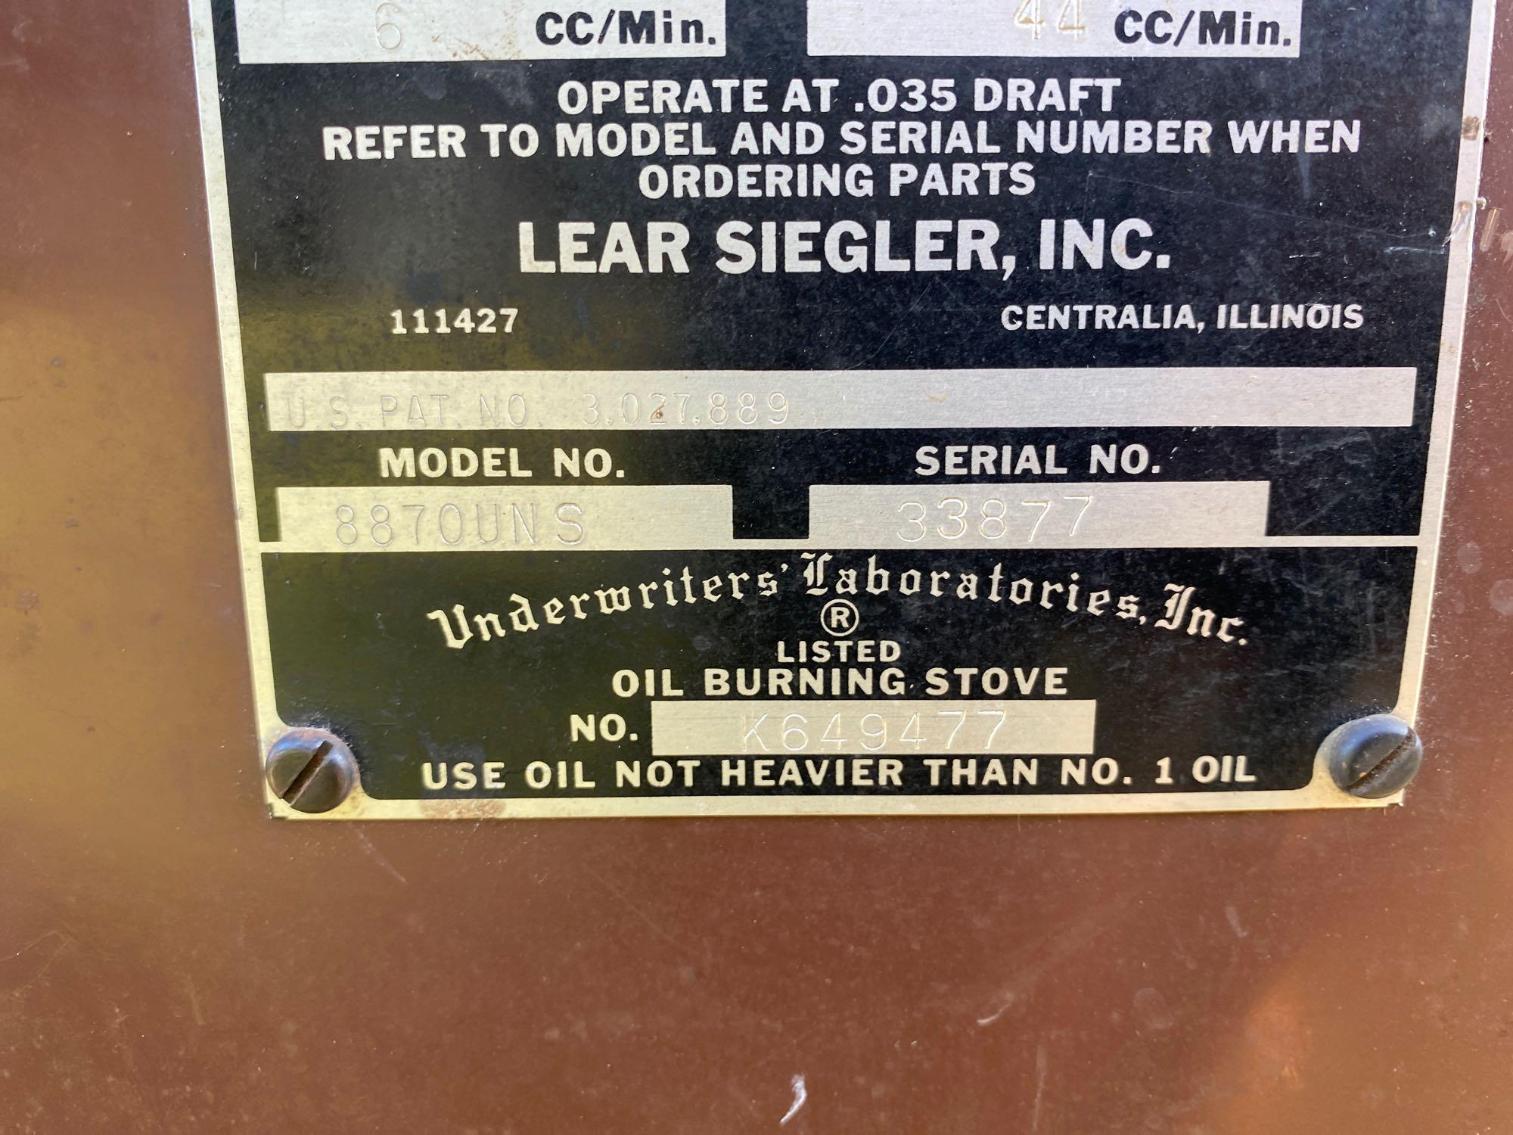 Image for Siegler Oil Stove Model 8870UNS 